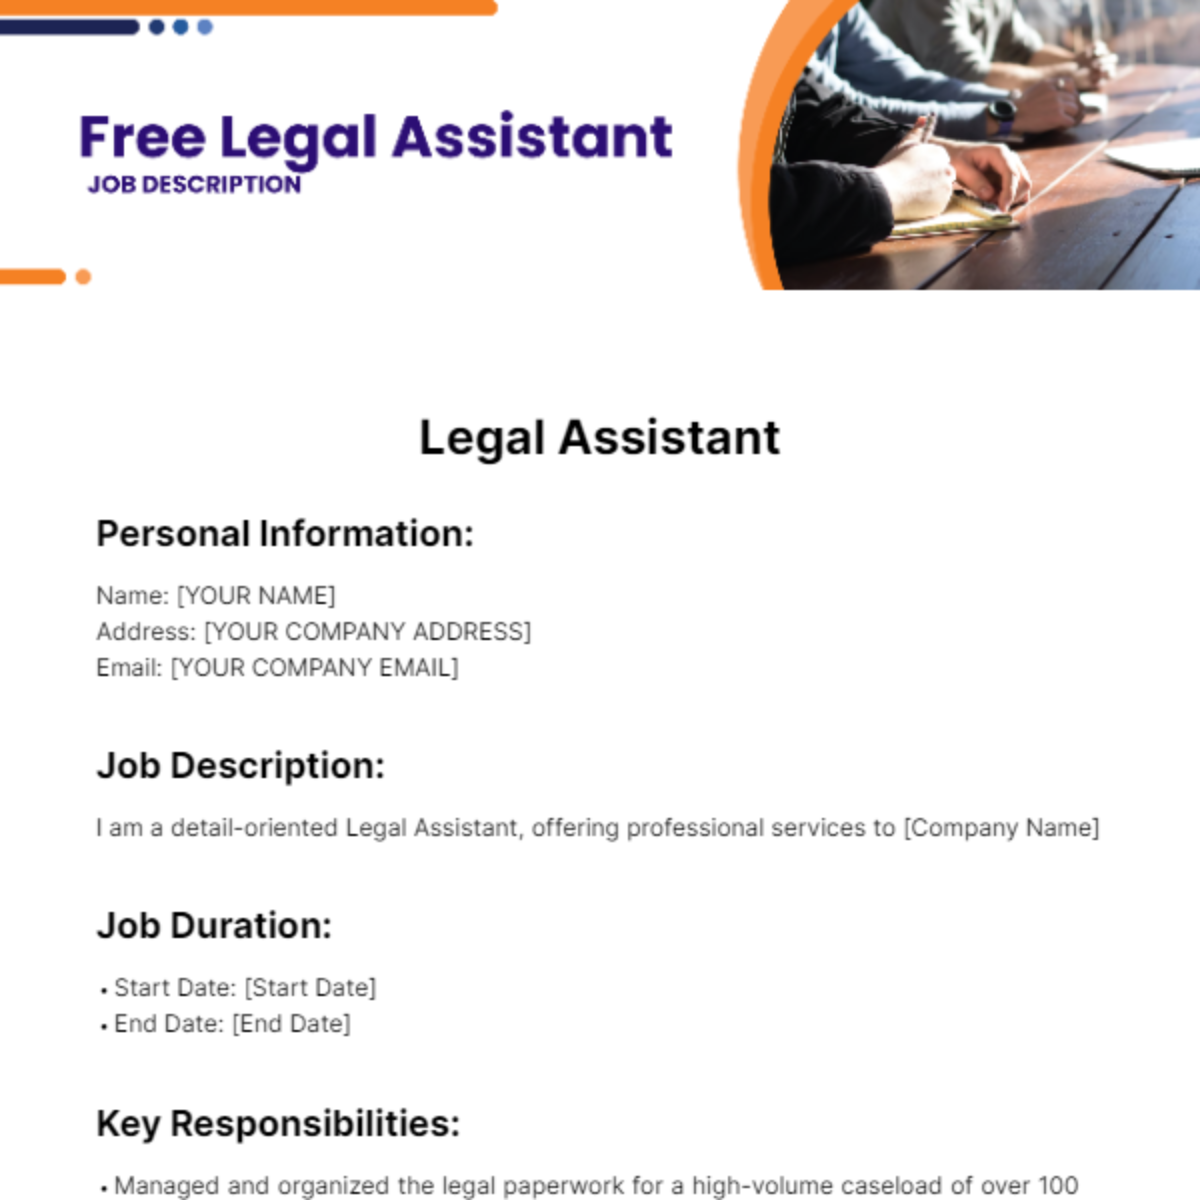 Legal Assistant Job Description for Resume Template